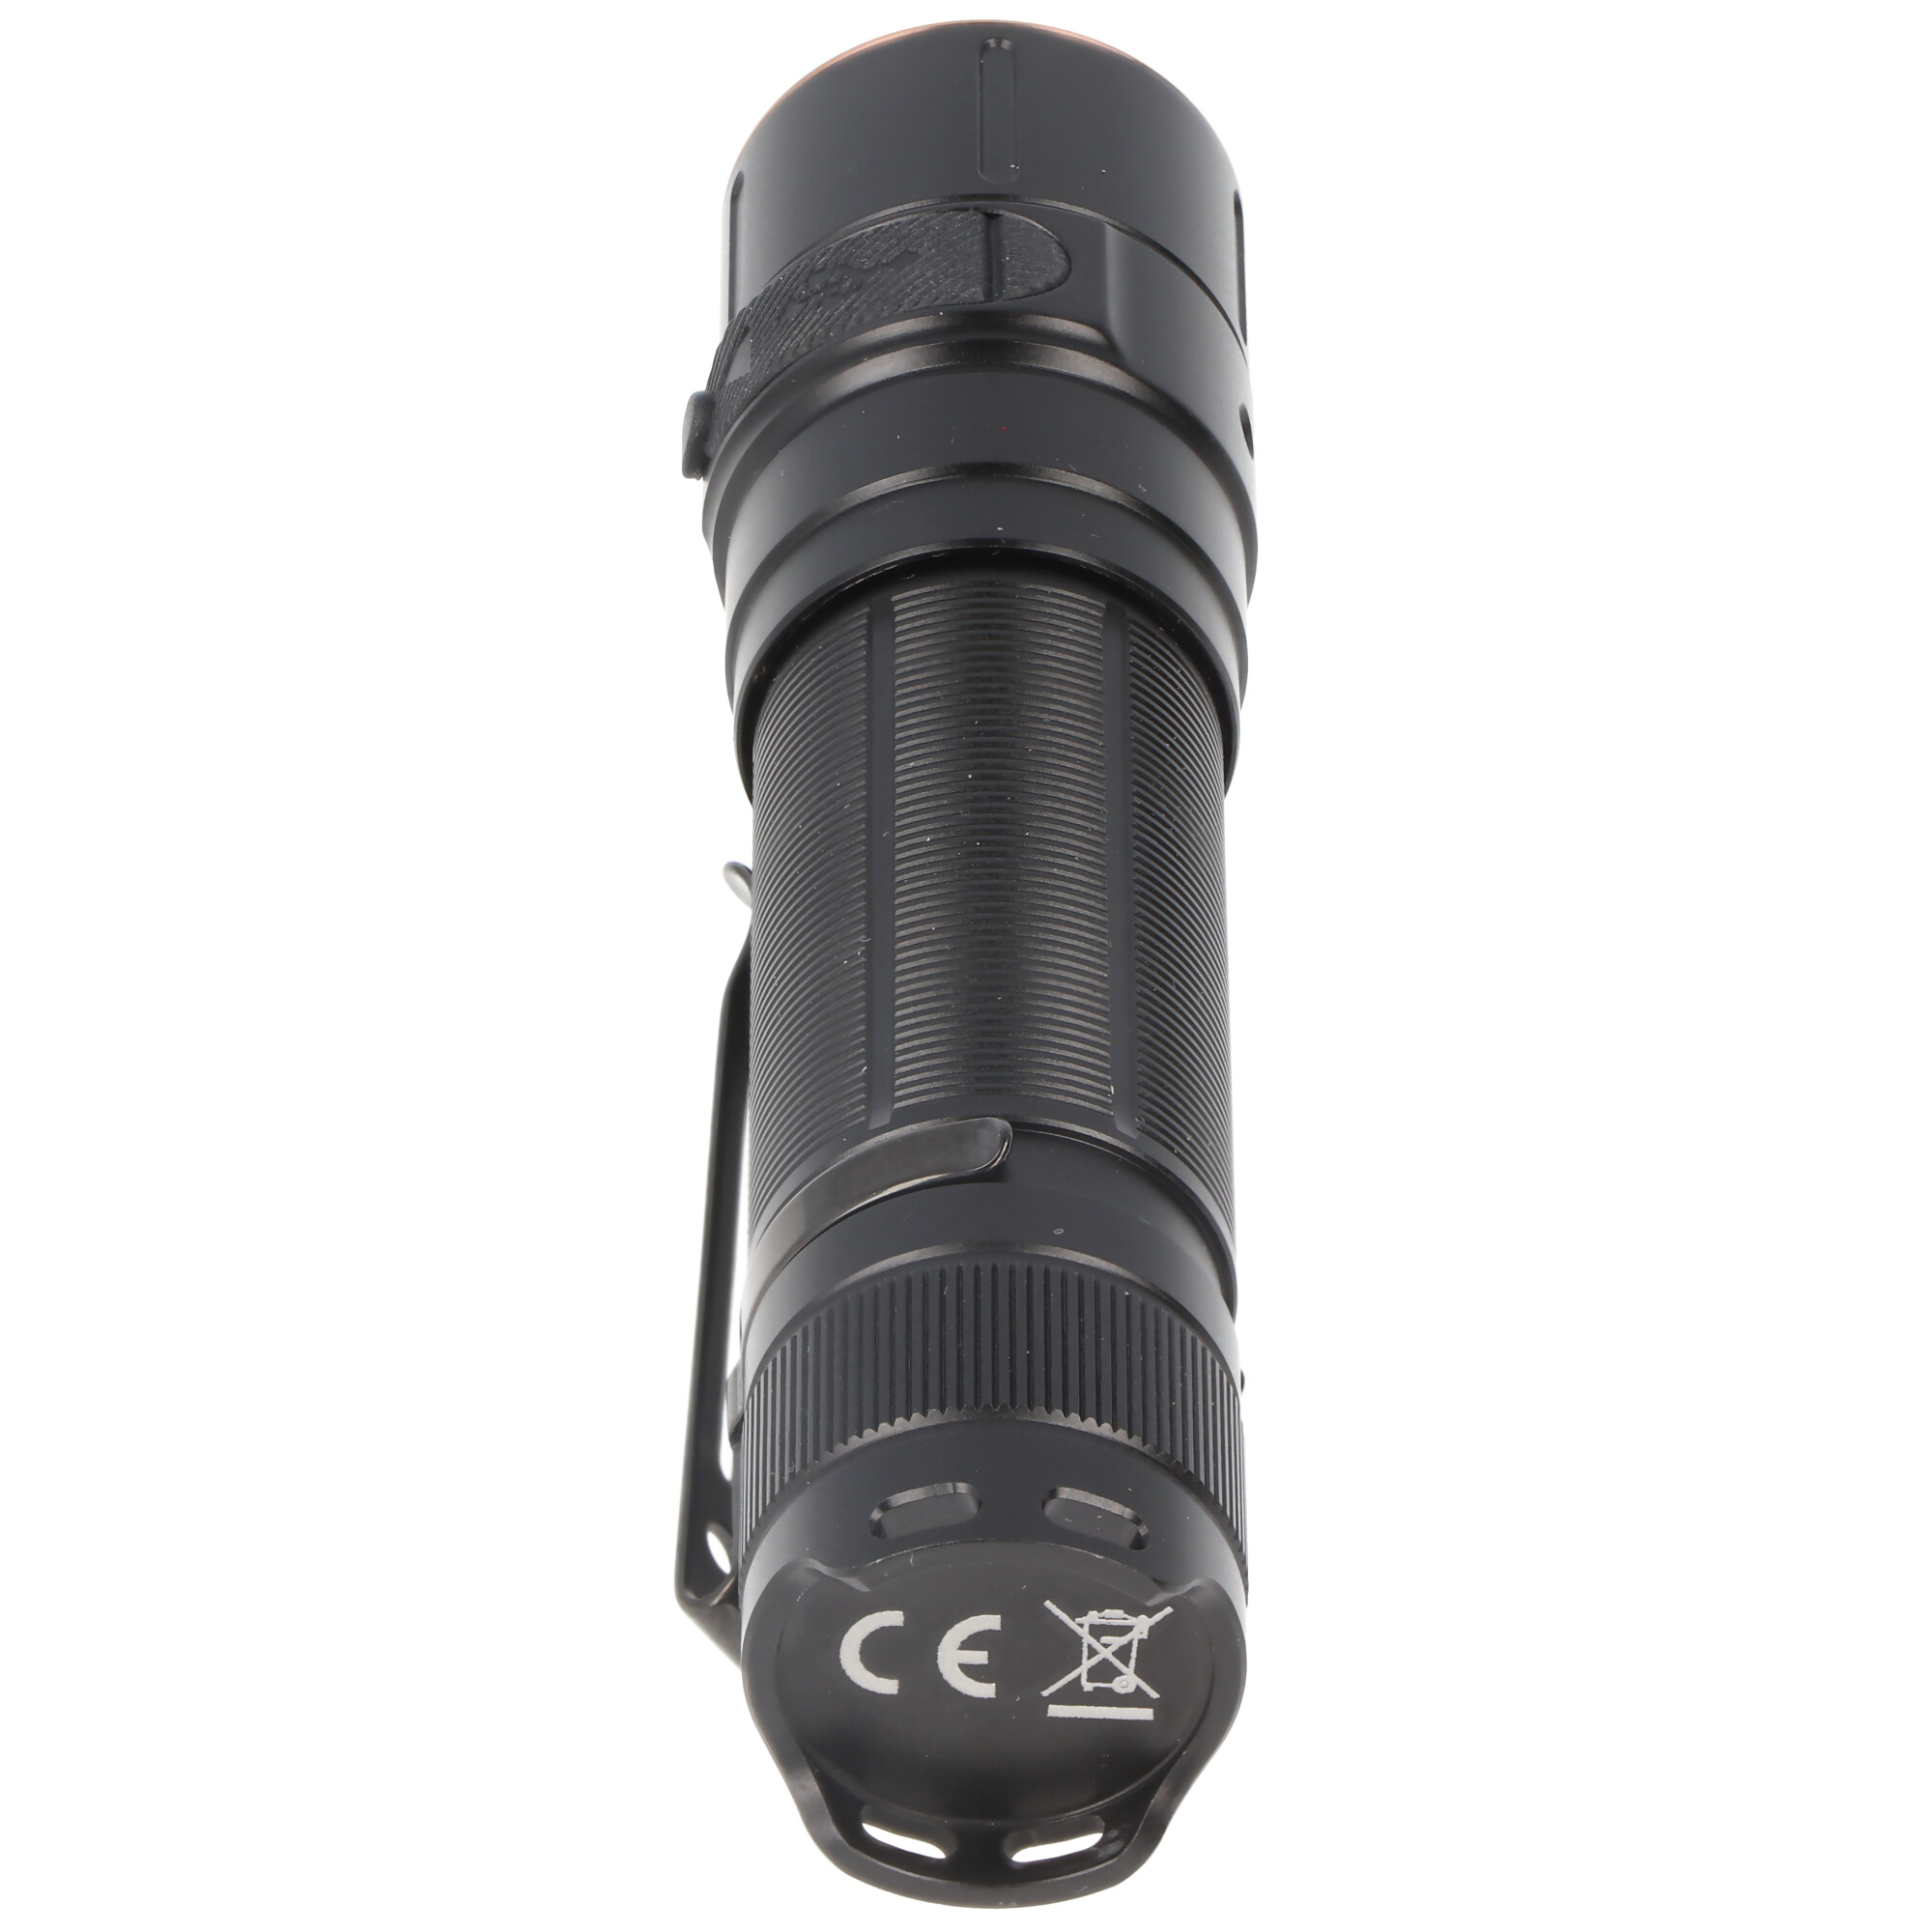 Fenix E28R LED-Taschenlampe mit USB-C Ladeanschluss, 1500 Lumen, inklusive ARB-L18-3400 Li-Ion Akku